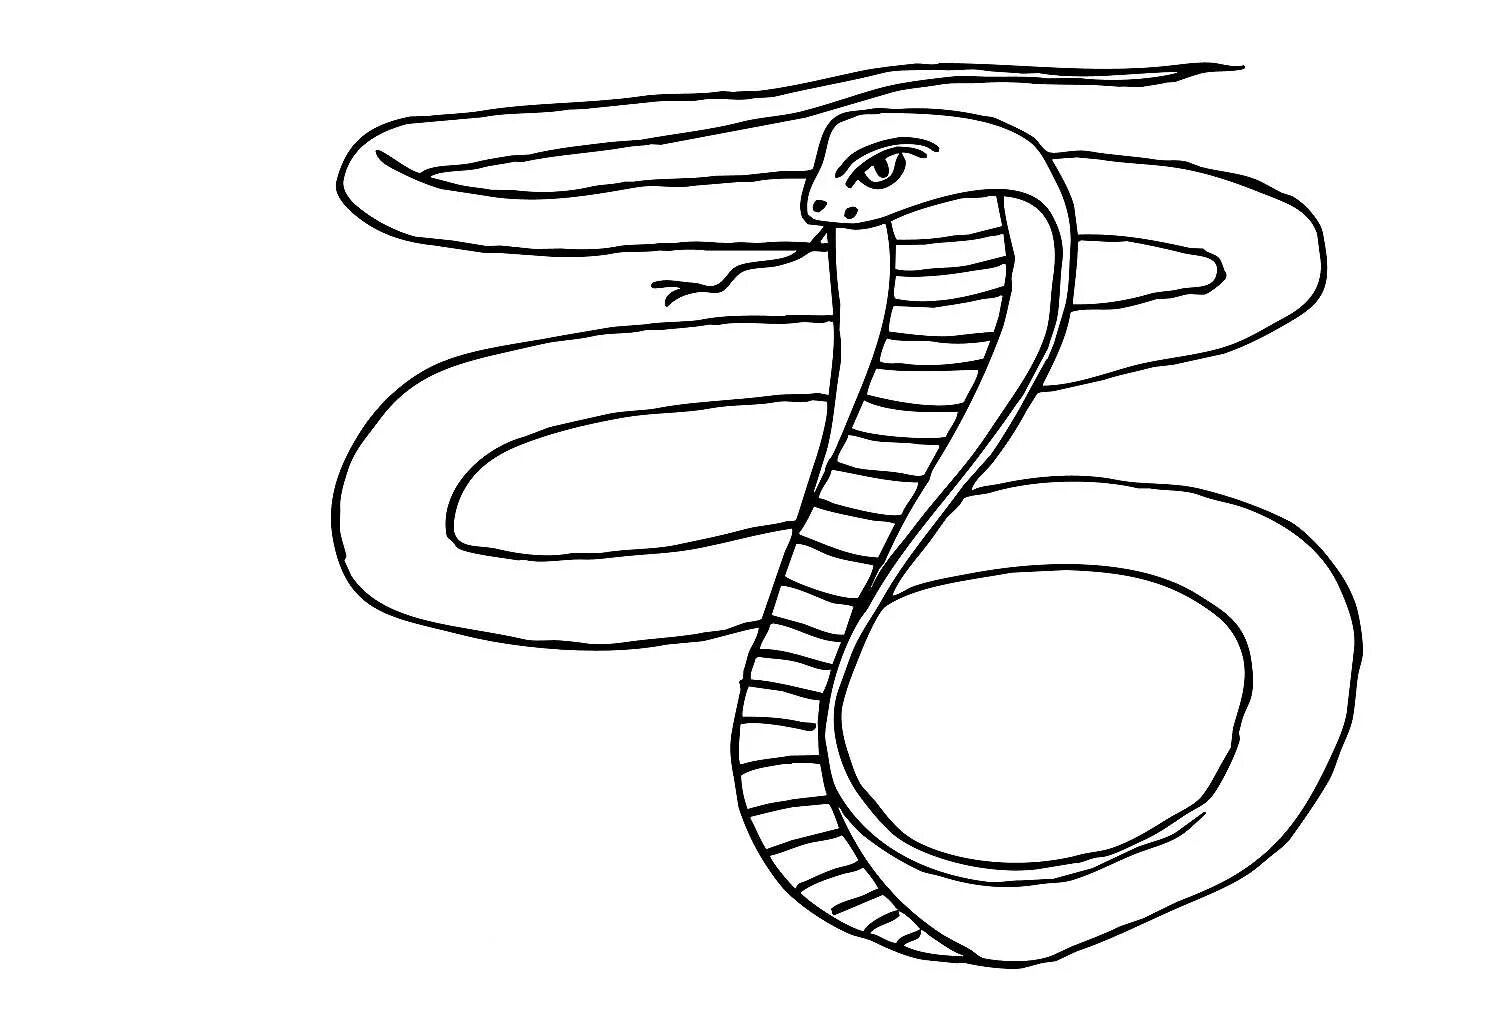 Раскраски змей распечатать. Раскраска змея Кобра. Степная гадюка раскраска. Раскраска змеи для детей. Змея раскраска для детей.